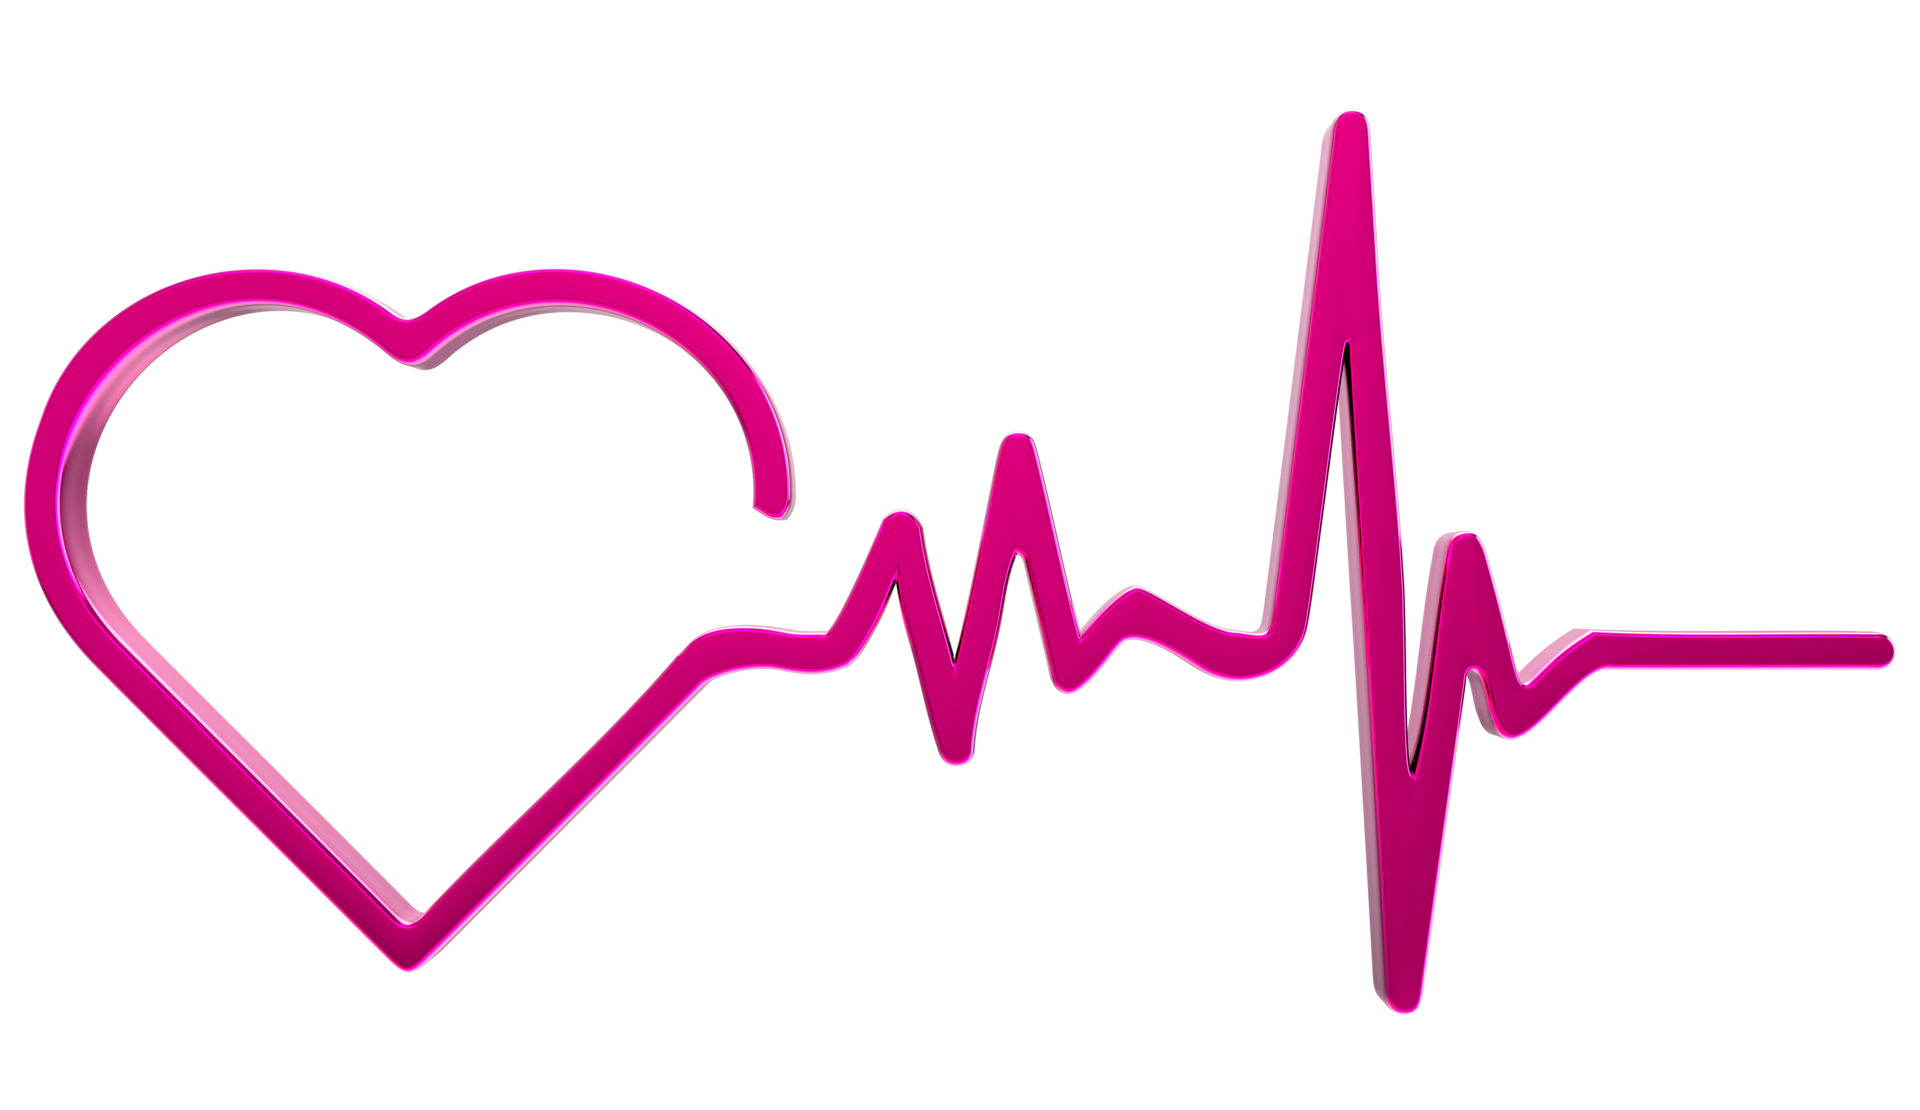 Tình hình dịch bệnh vẫn diễn biến phức tạp, việc theo dõi nhịp tim tại nhà là rất quan trọng. Chúng tôi cung cấp miễn phí hình nền nguyên bản với các hiệu ứng nhịp tim trên nền trong suốt đẹp mắt, giúp bạn theo dõi nhịp tim một cách tiện lợi và thú vị.